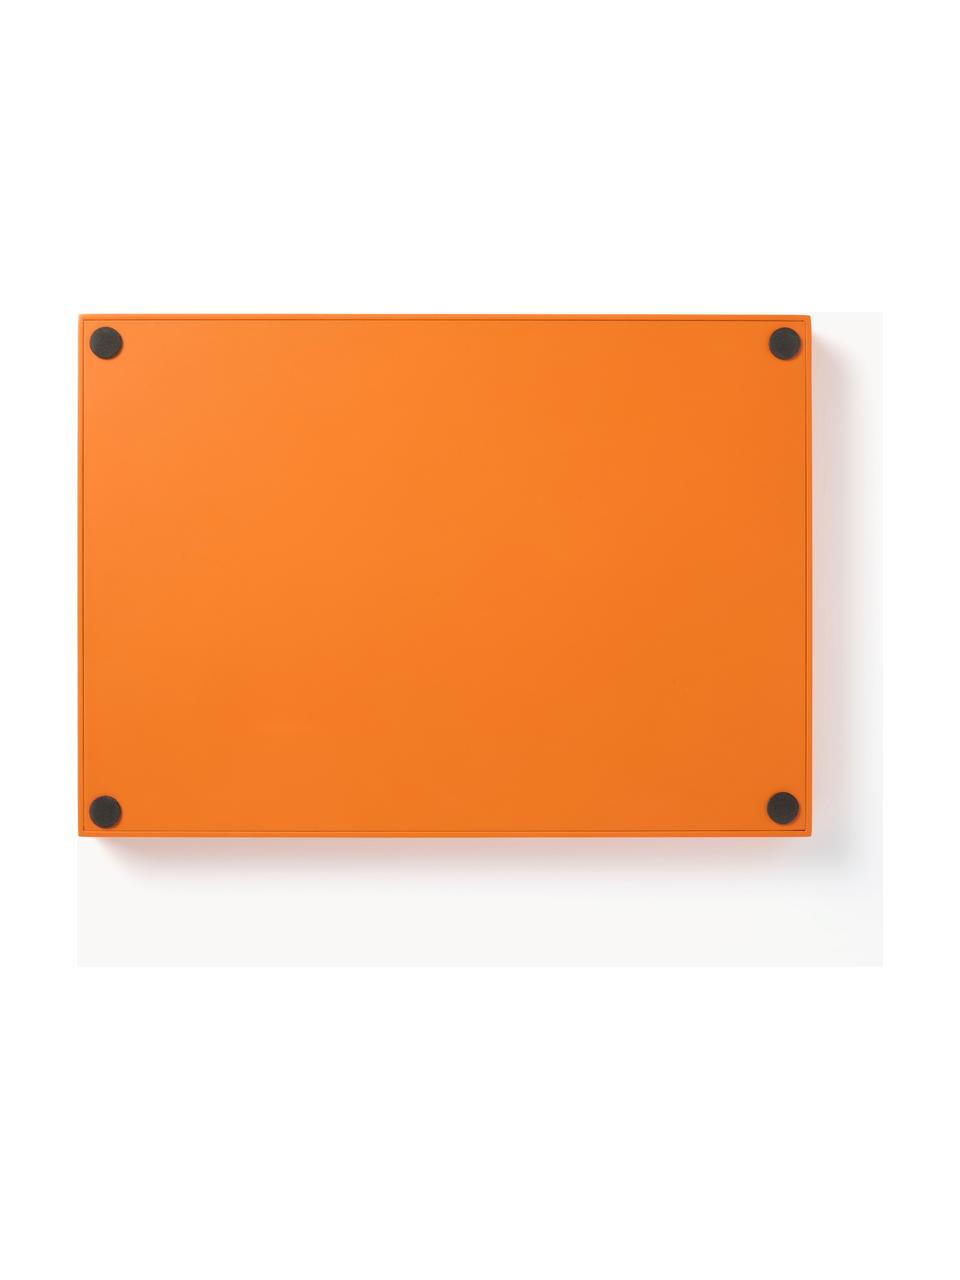 Taca dekoracyjna z plecionką wiedeńską Carina, Pomarańczowy, S 35 x W 3 cm